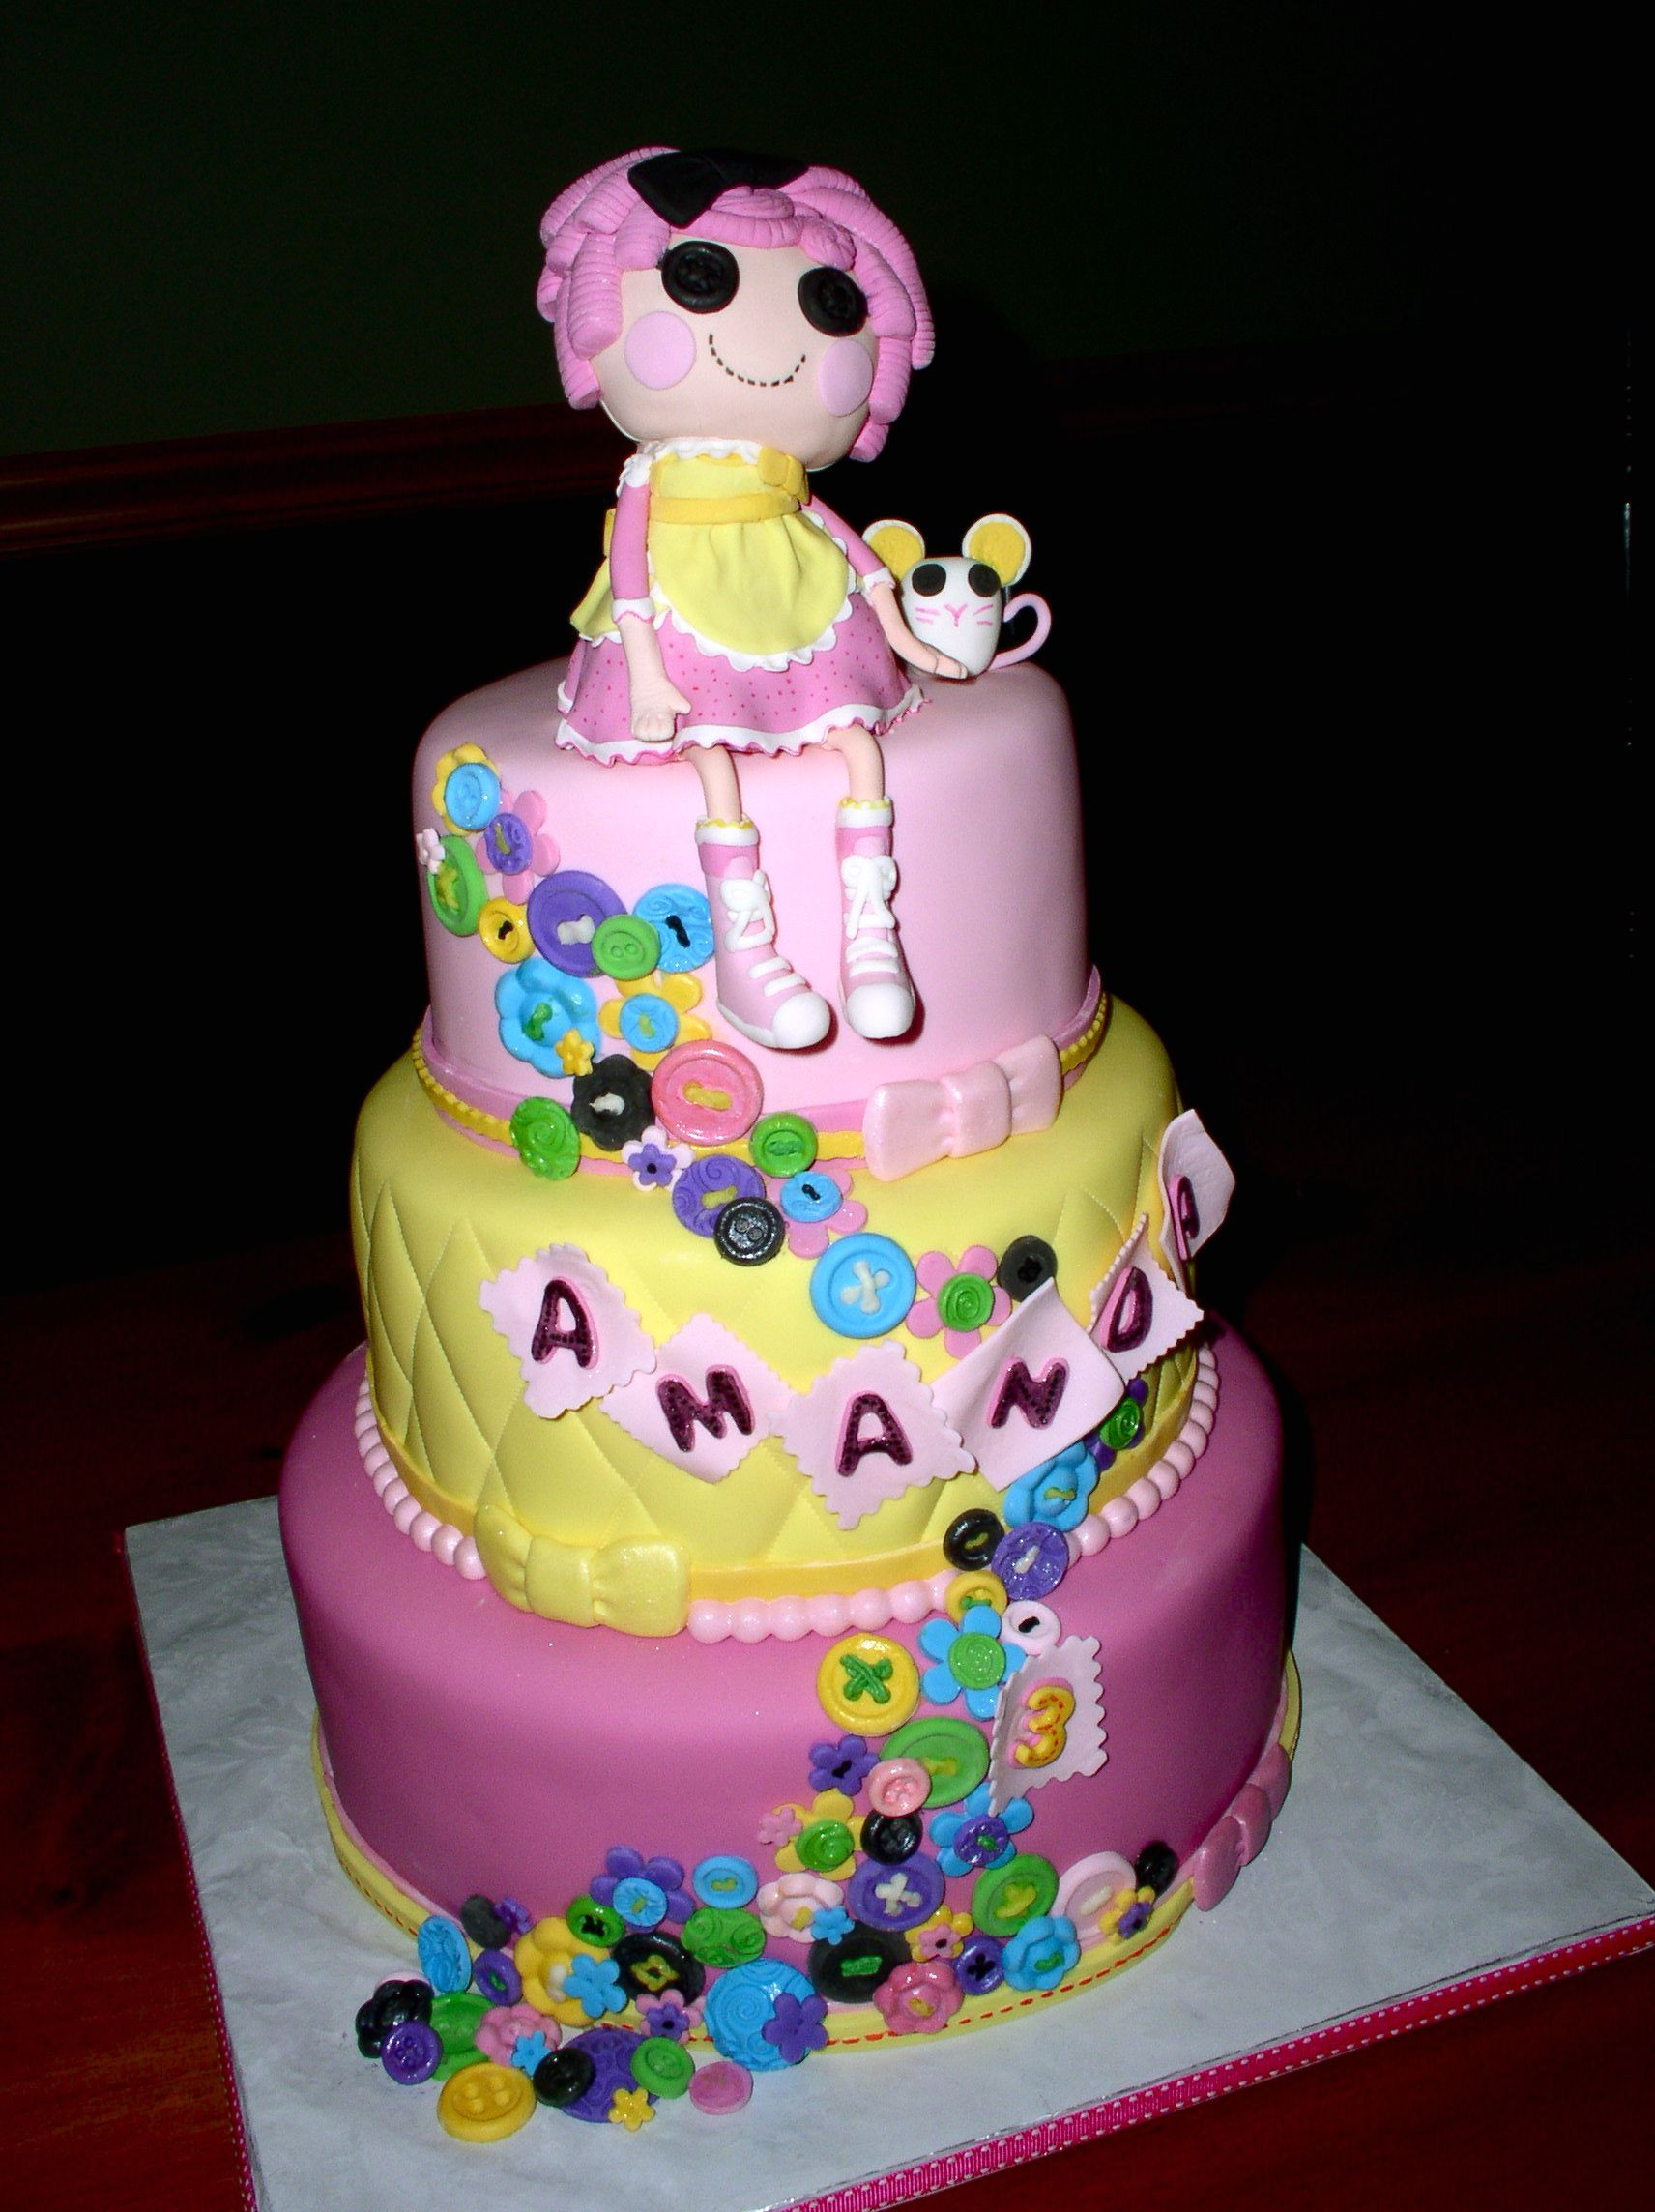 Lalaloopsy Birthday Cake
 Lalaloopsy Cakes – Decoration Ideas